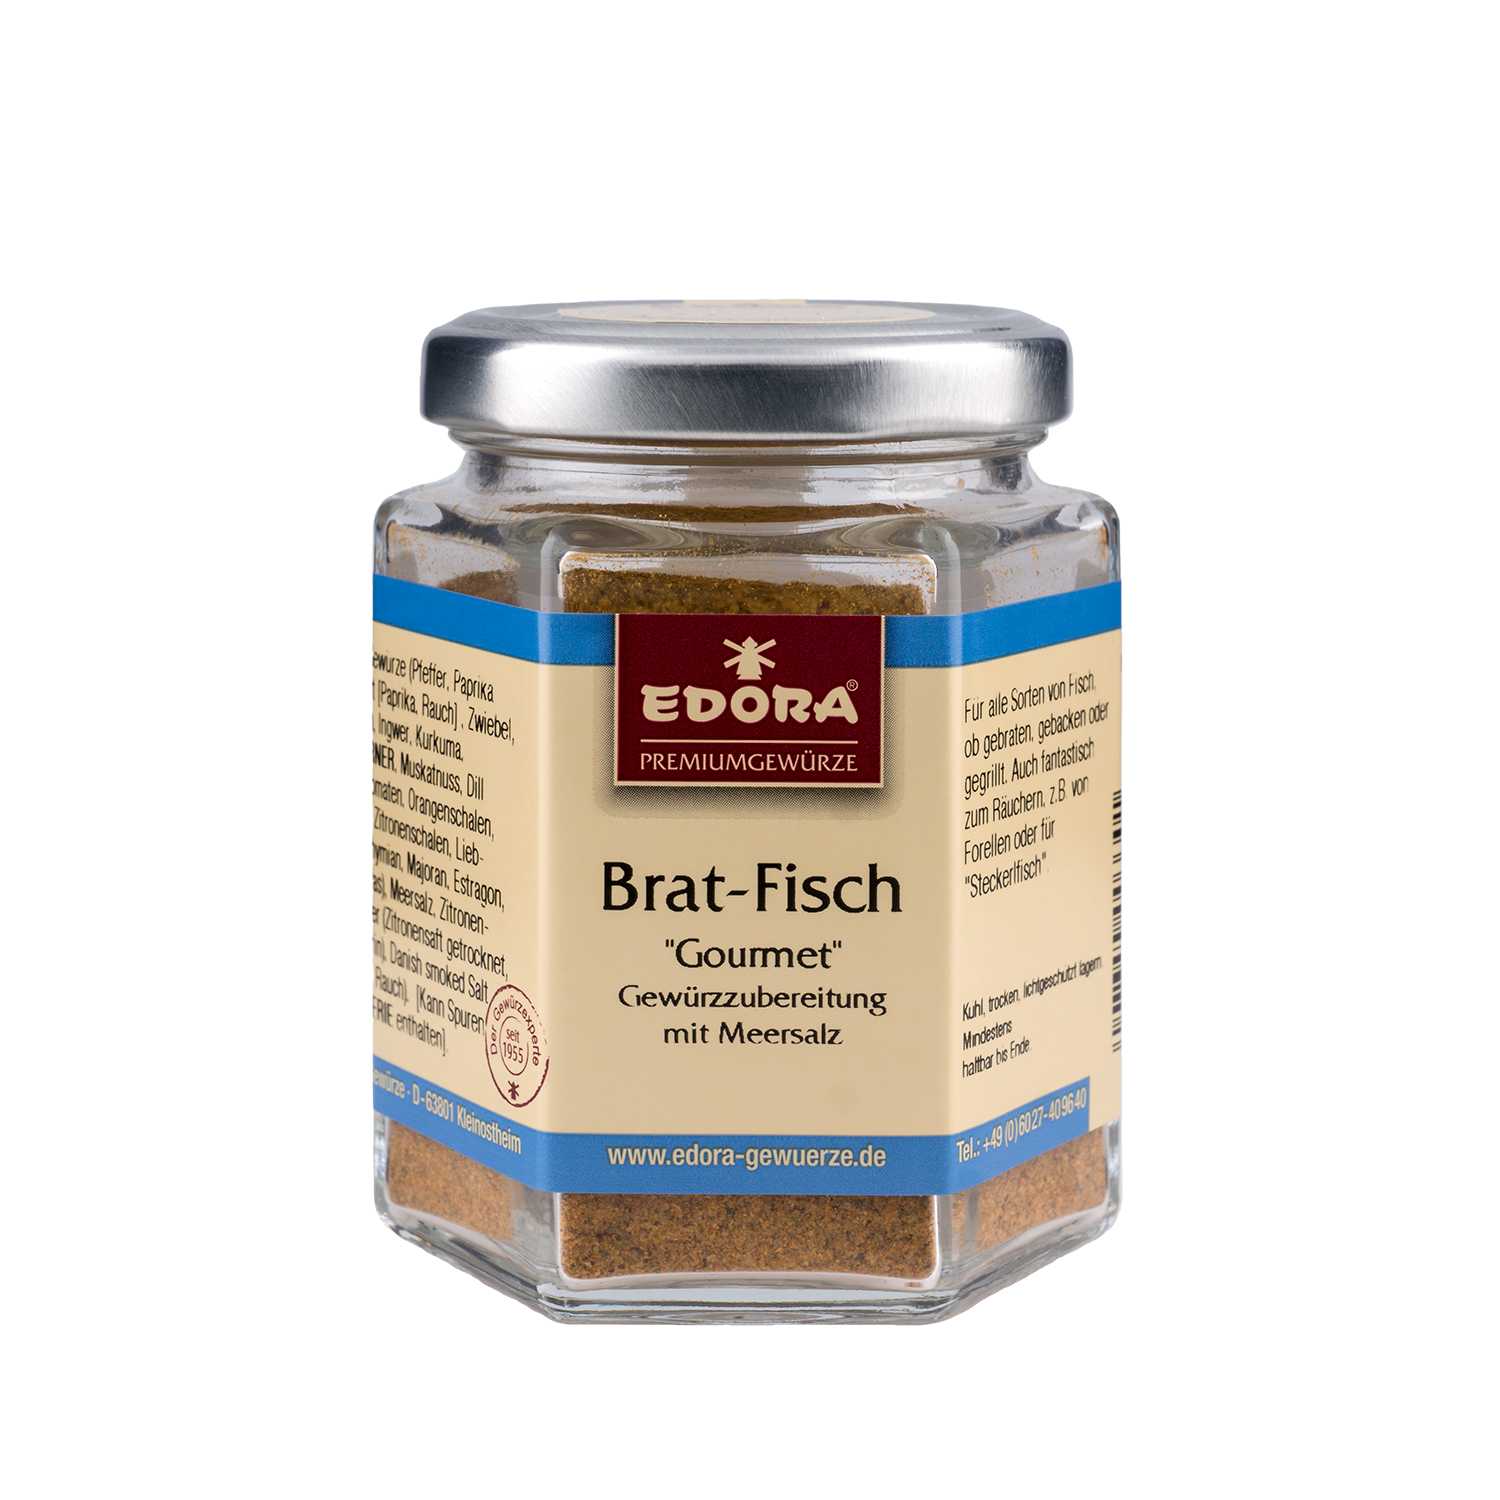 Edora Brat-Fisch "Gourmet" Gewürzzubereitung 90Gr 